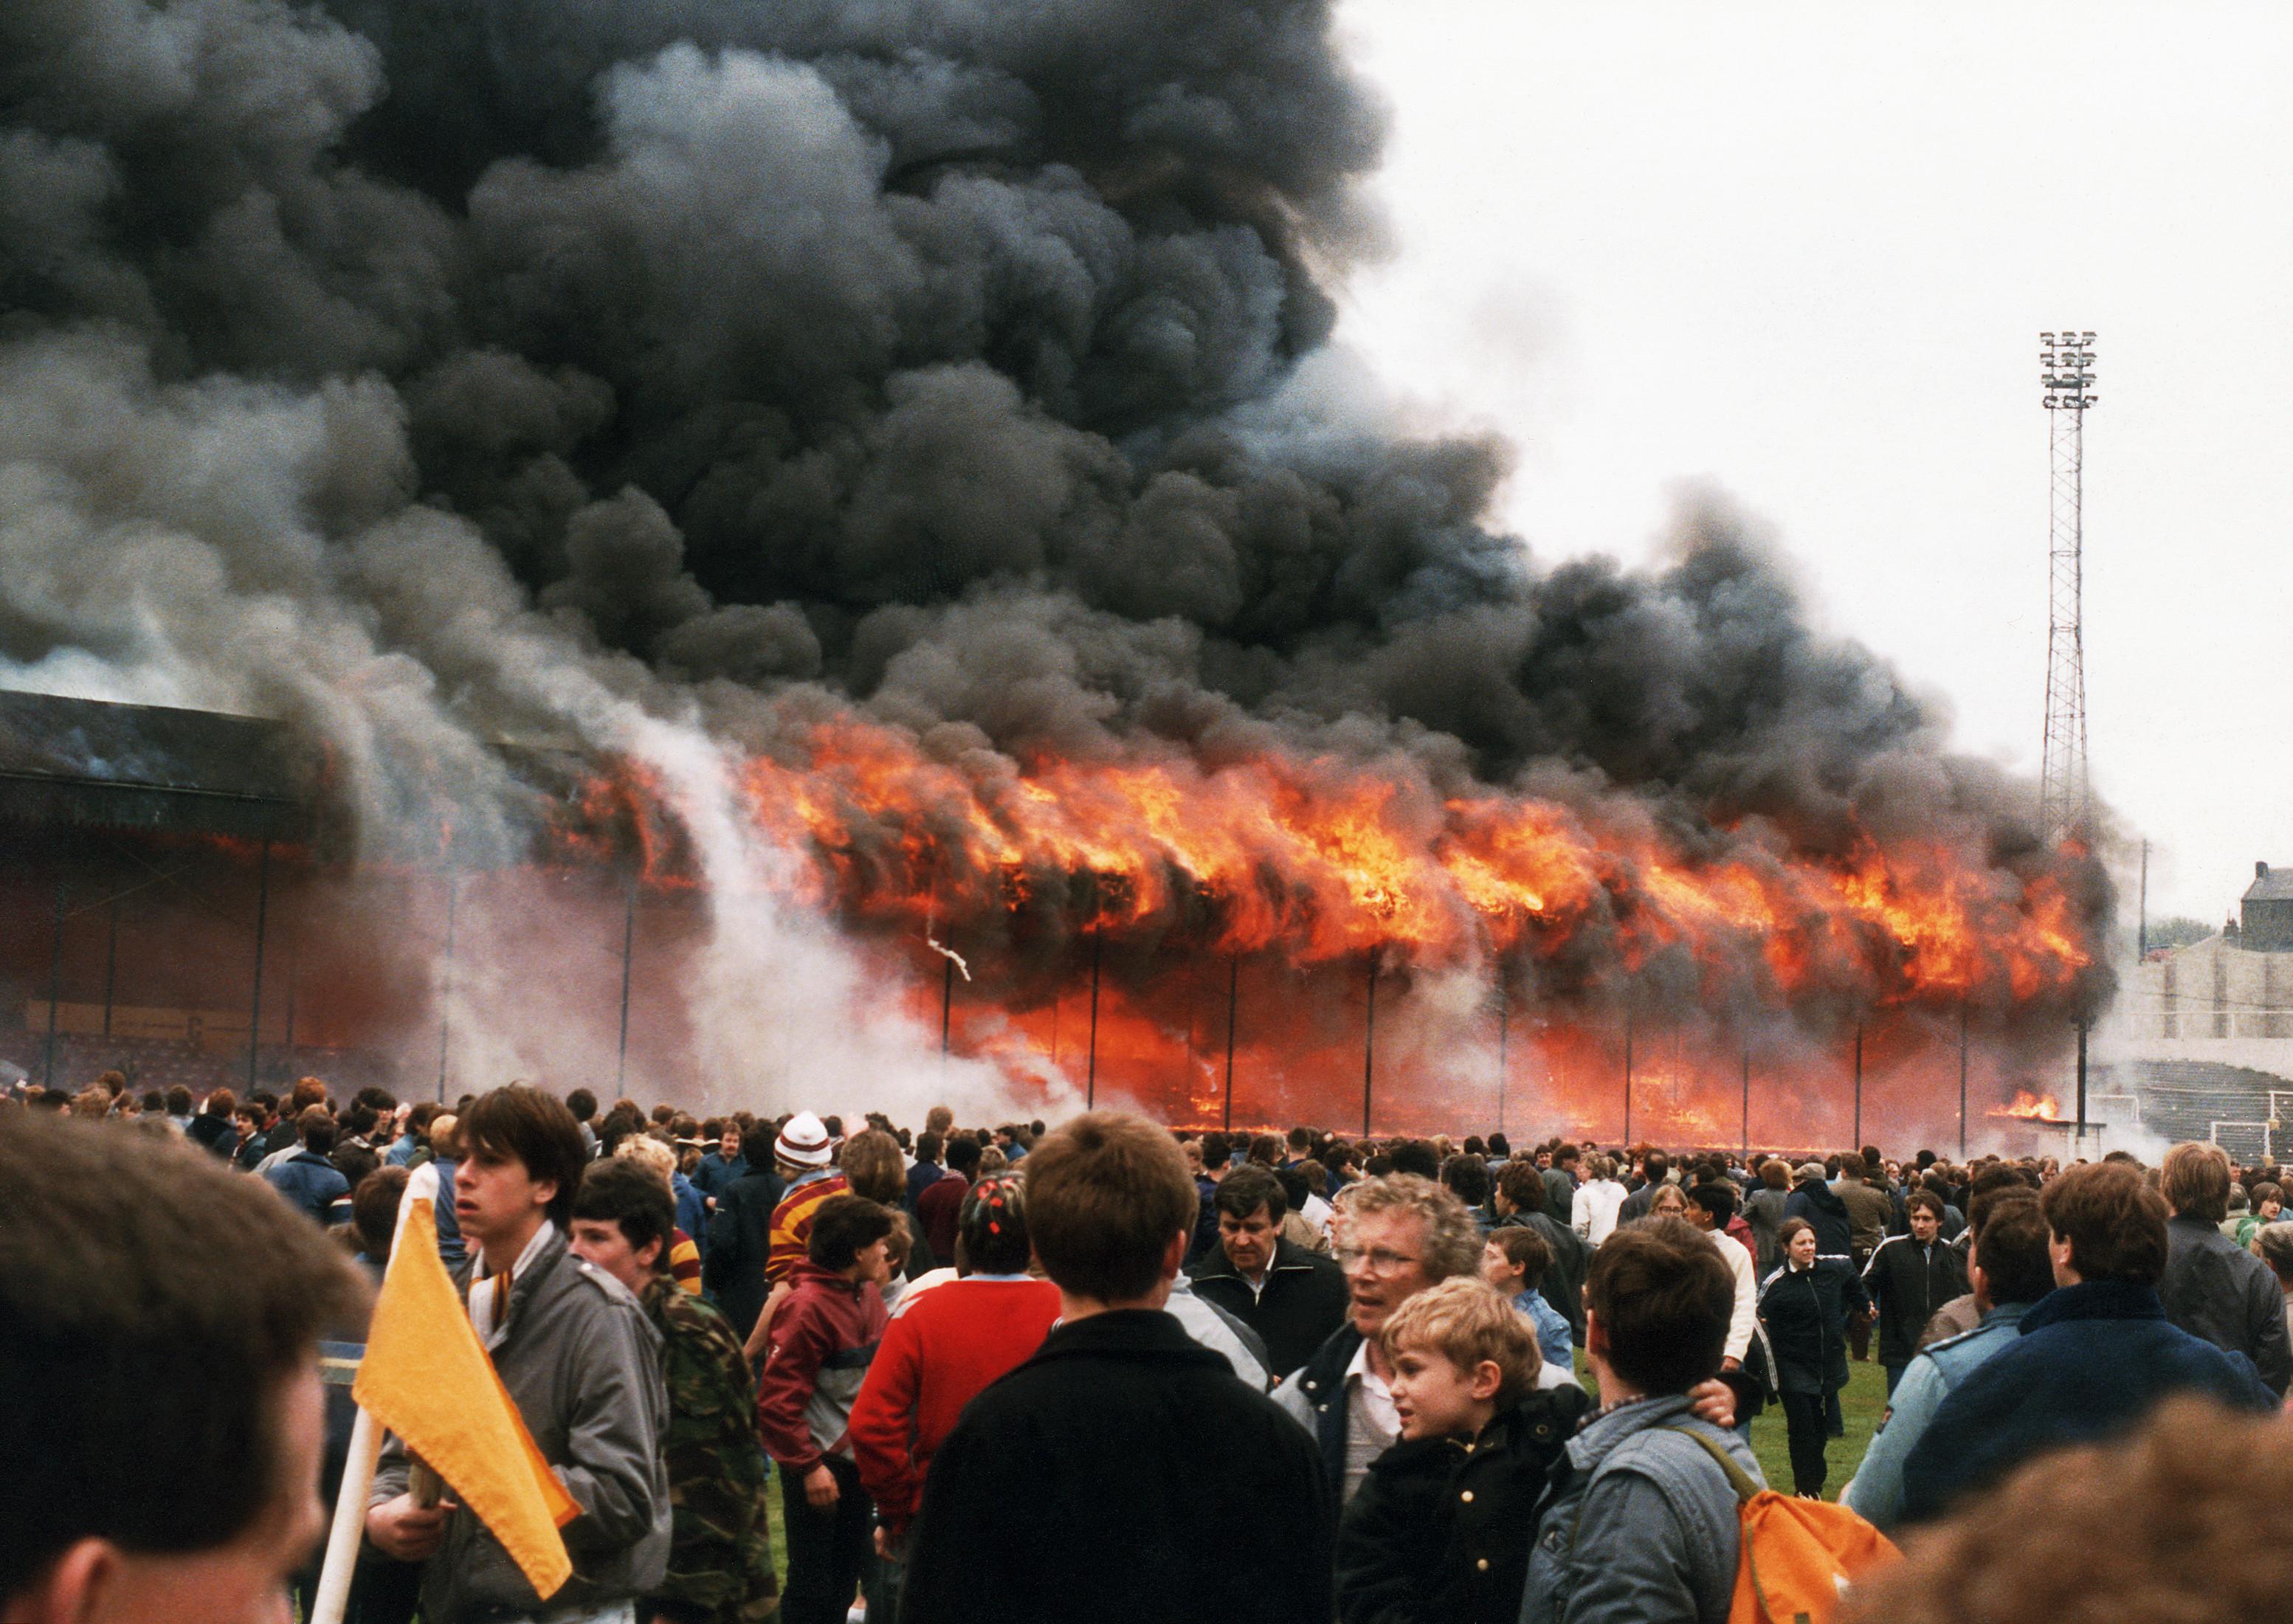 Взрыв на стадионе. Bradford City стадион пожар. Пожар на стадионе в Англии в 1985 году. Пожар на футбольном стадионе 1985 Брэдфорд.